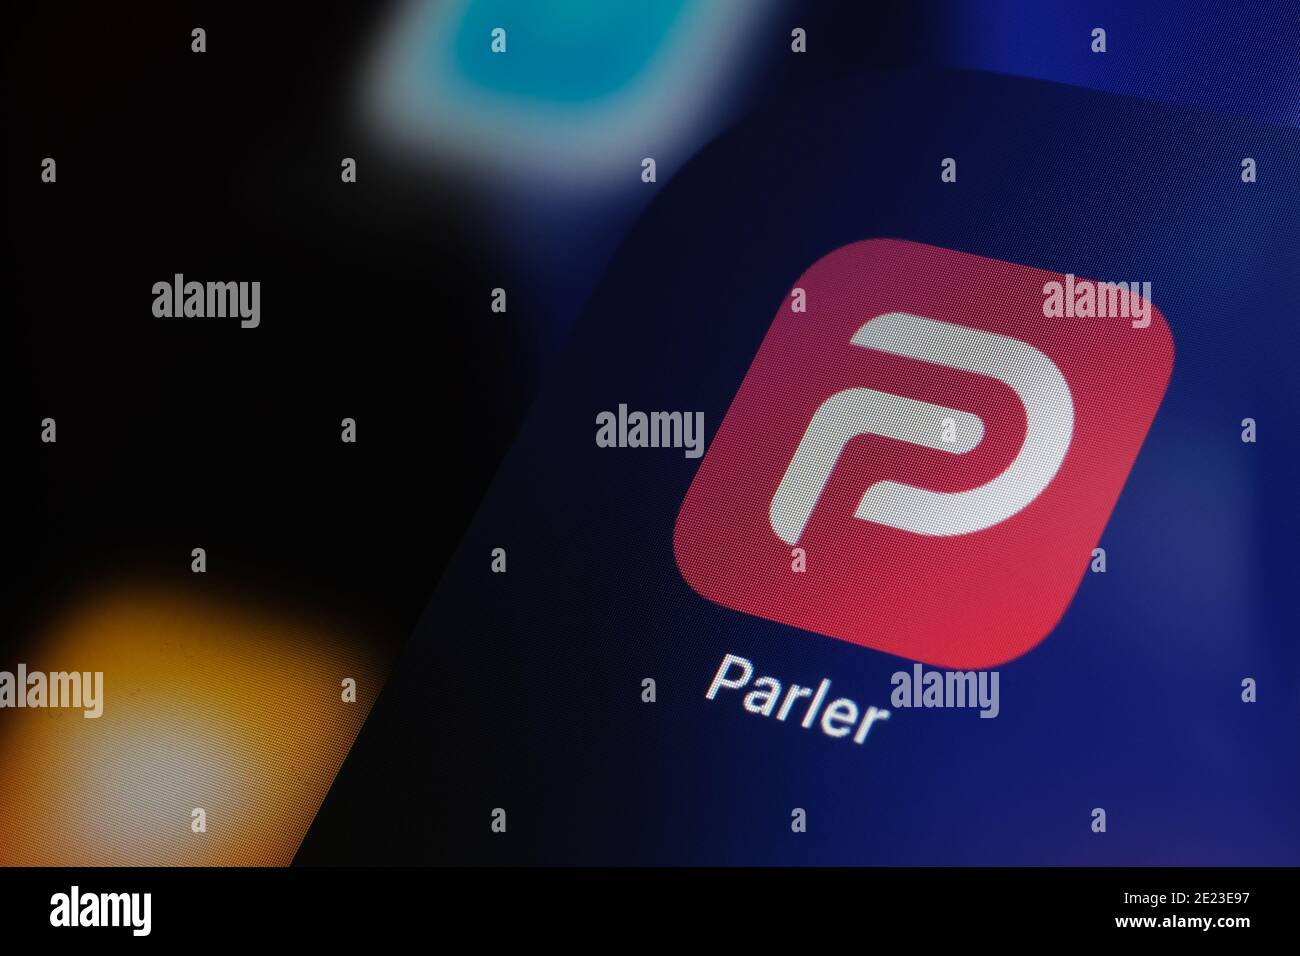 Logo dell'app Parler visualizzato sullo schermo dell'iPad. Parler è una piattaforma di social media vietata negli Stati Uniti. Foto Stock